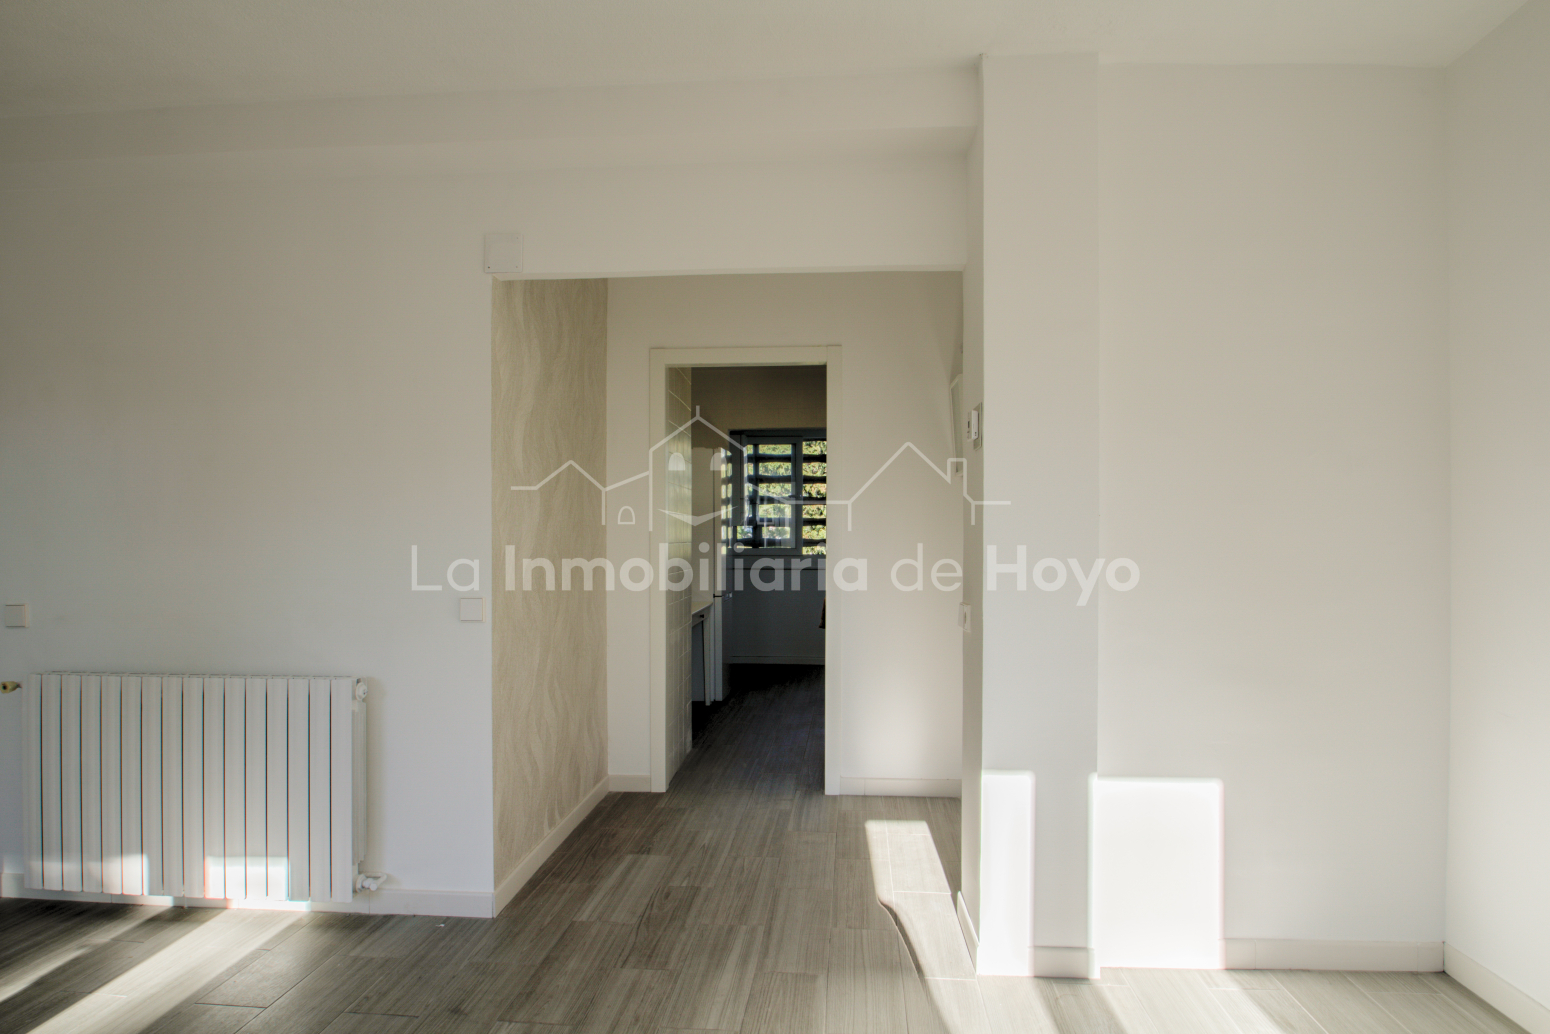 Pisos-Venta-Hoyo de Manzanares-1080653-Foto-7